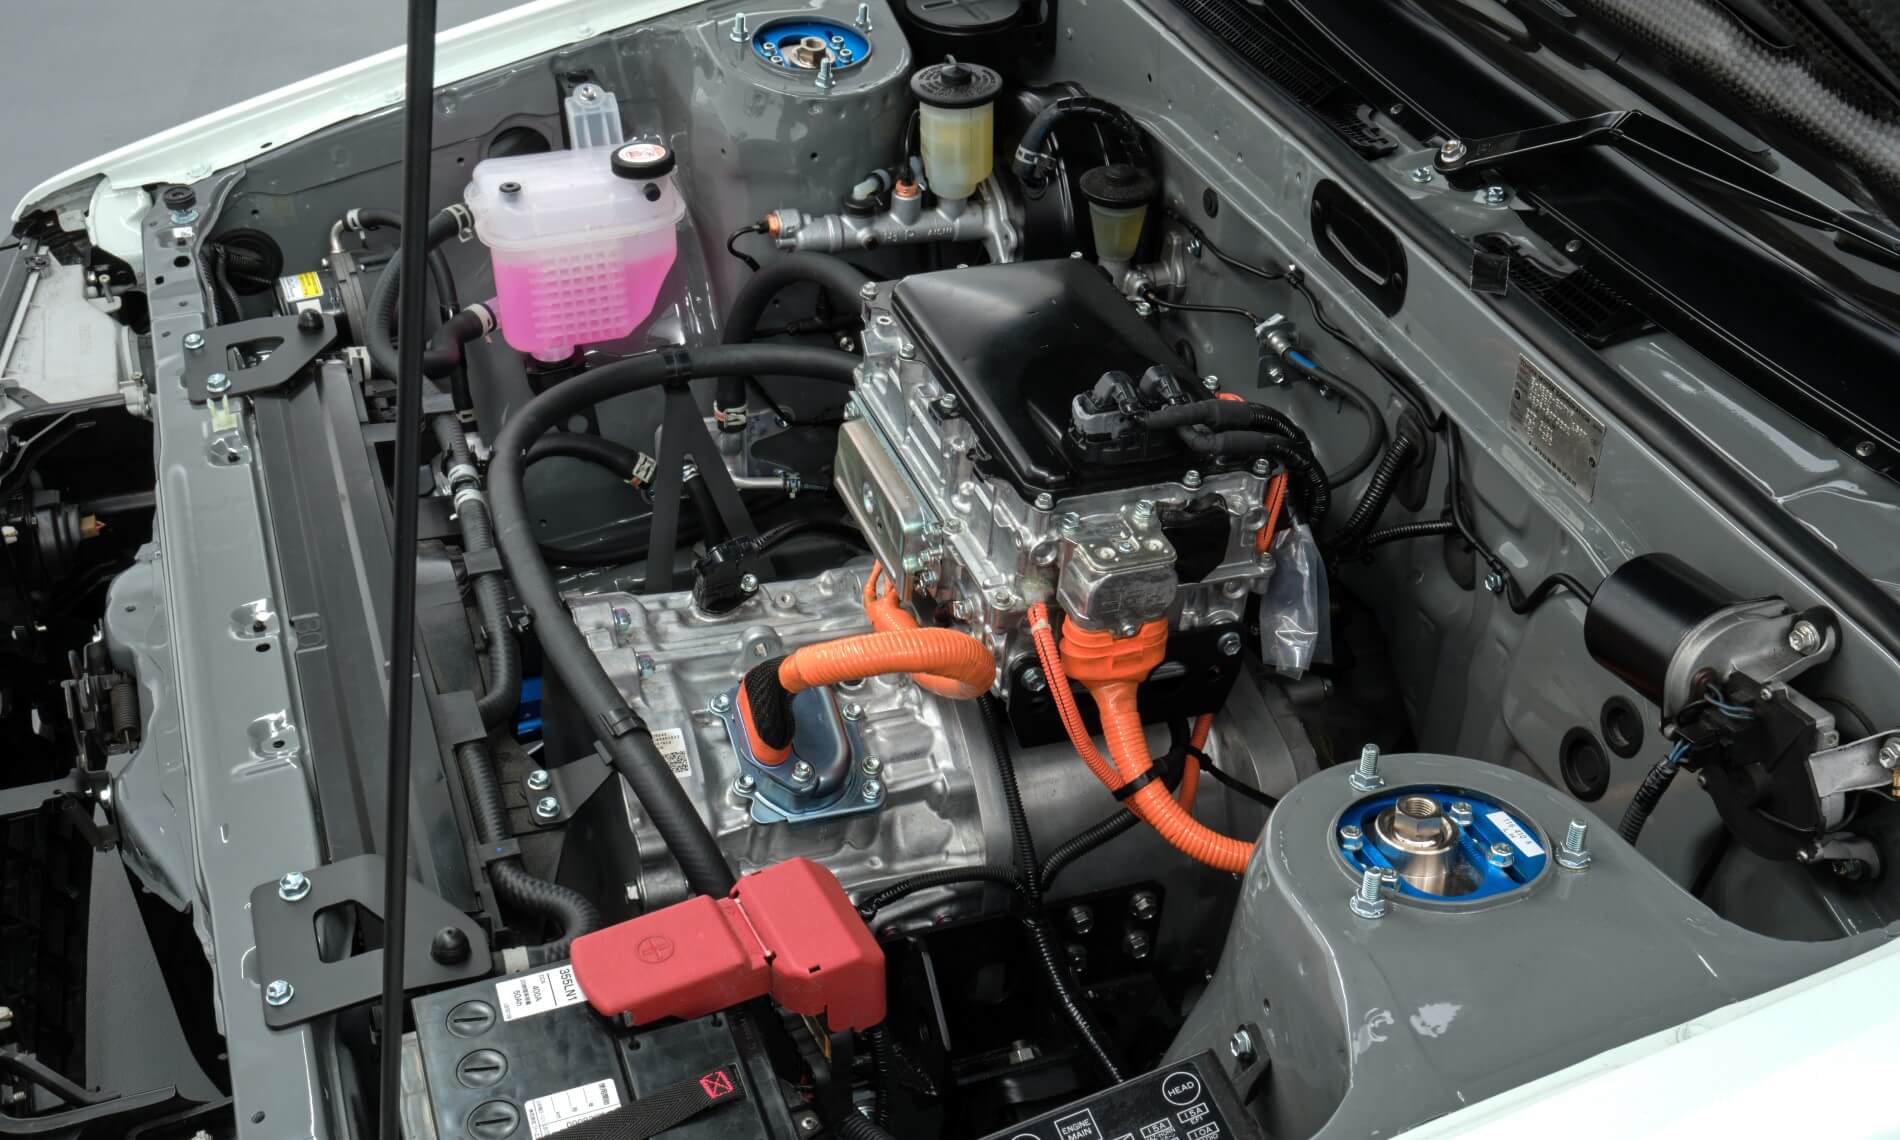 Toyota AE86s with EV powertrain